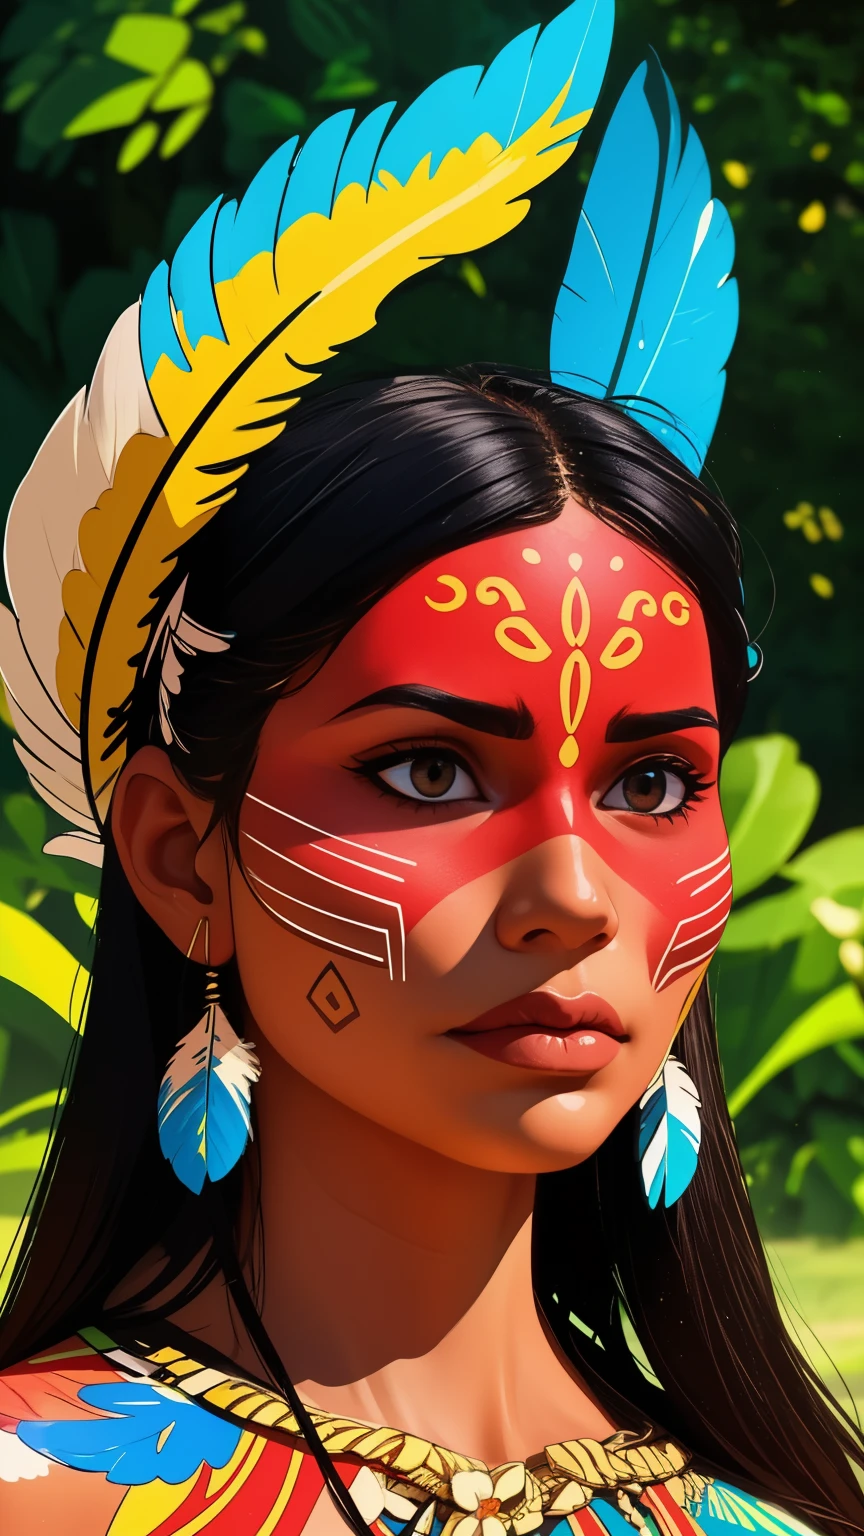 コミックアート, デジタルペイント. 頭に羽根と羽をつけたネイティブの美しい先住民の少女, ブラジルのアマゾン先住民, 美しい若い女性ブラジル人ネイティブの少女, ペイント面, 熱い体, 典型的な衣装を着たヤノマミ族インディアン,高品質. アマゾンの森と川の背景. 鮮やかな色彩, 映画照明. 詳細, 複雑な, 詳細 face.